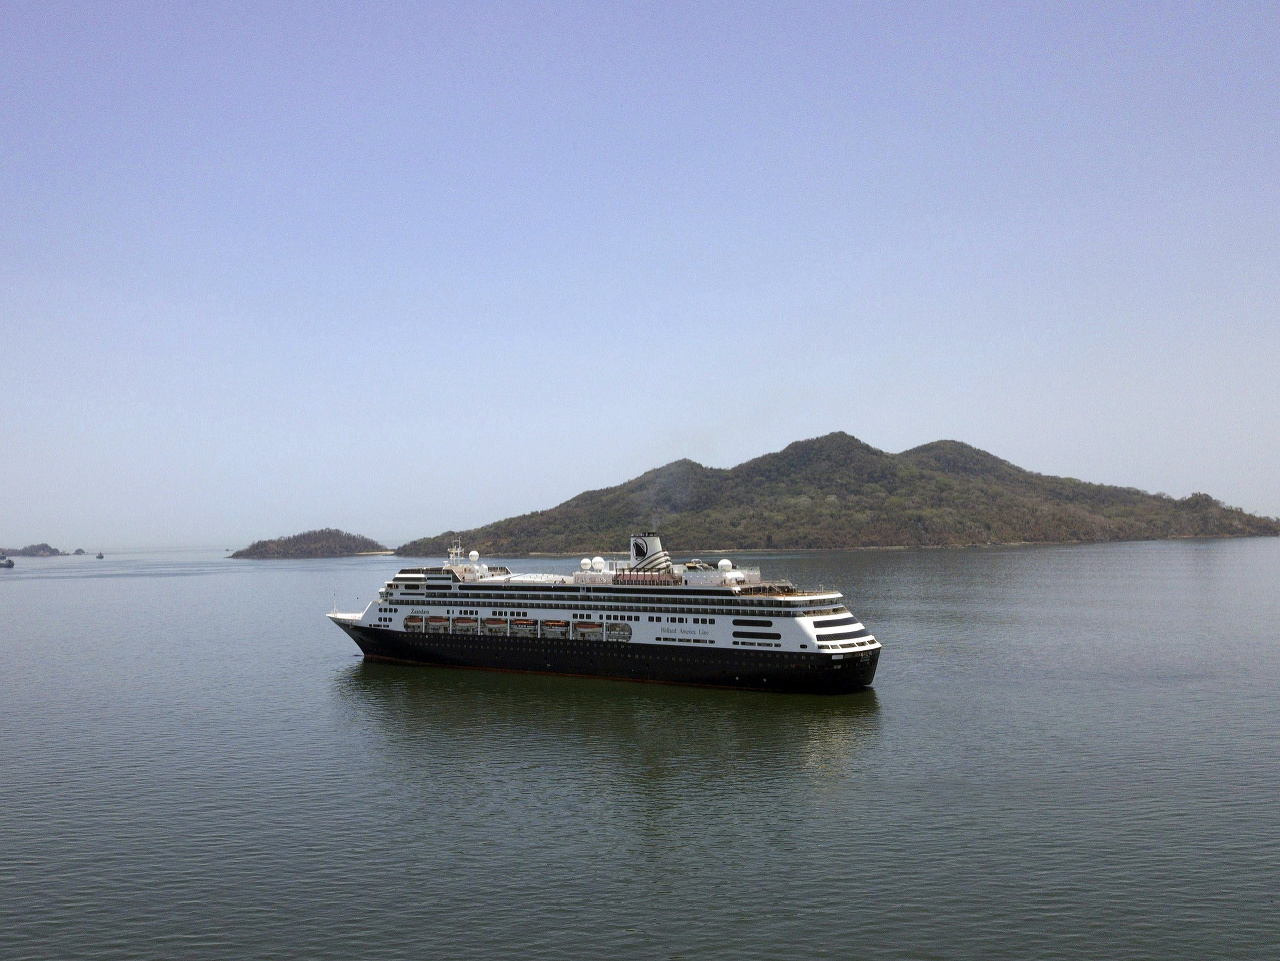 Štyria pasažieri zomreli na lodi na panamskom pobreží